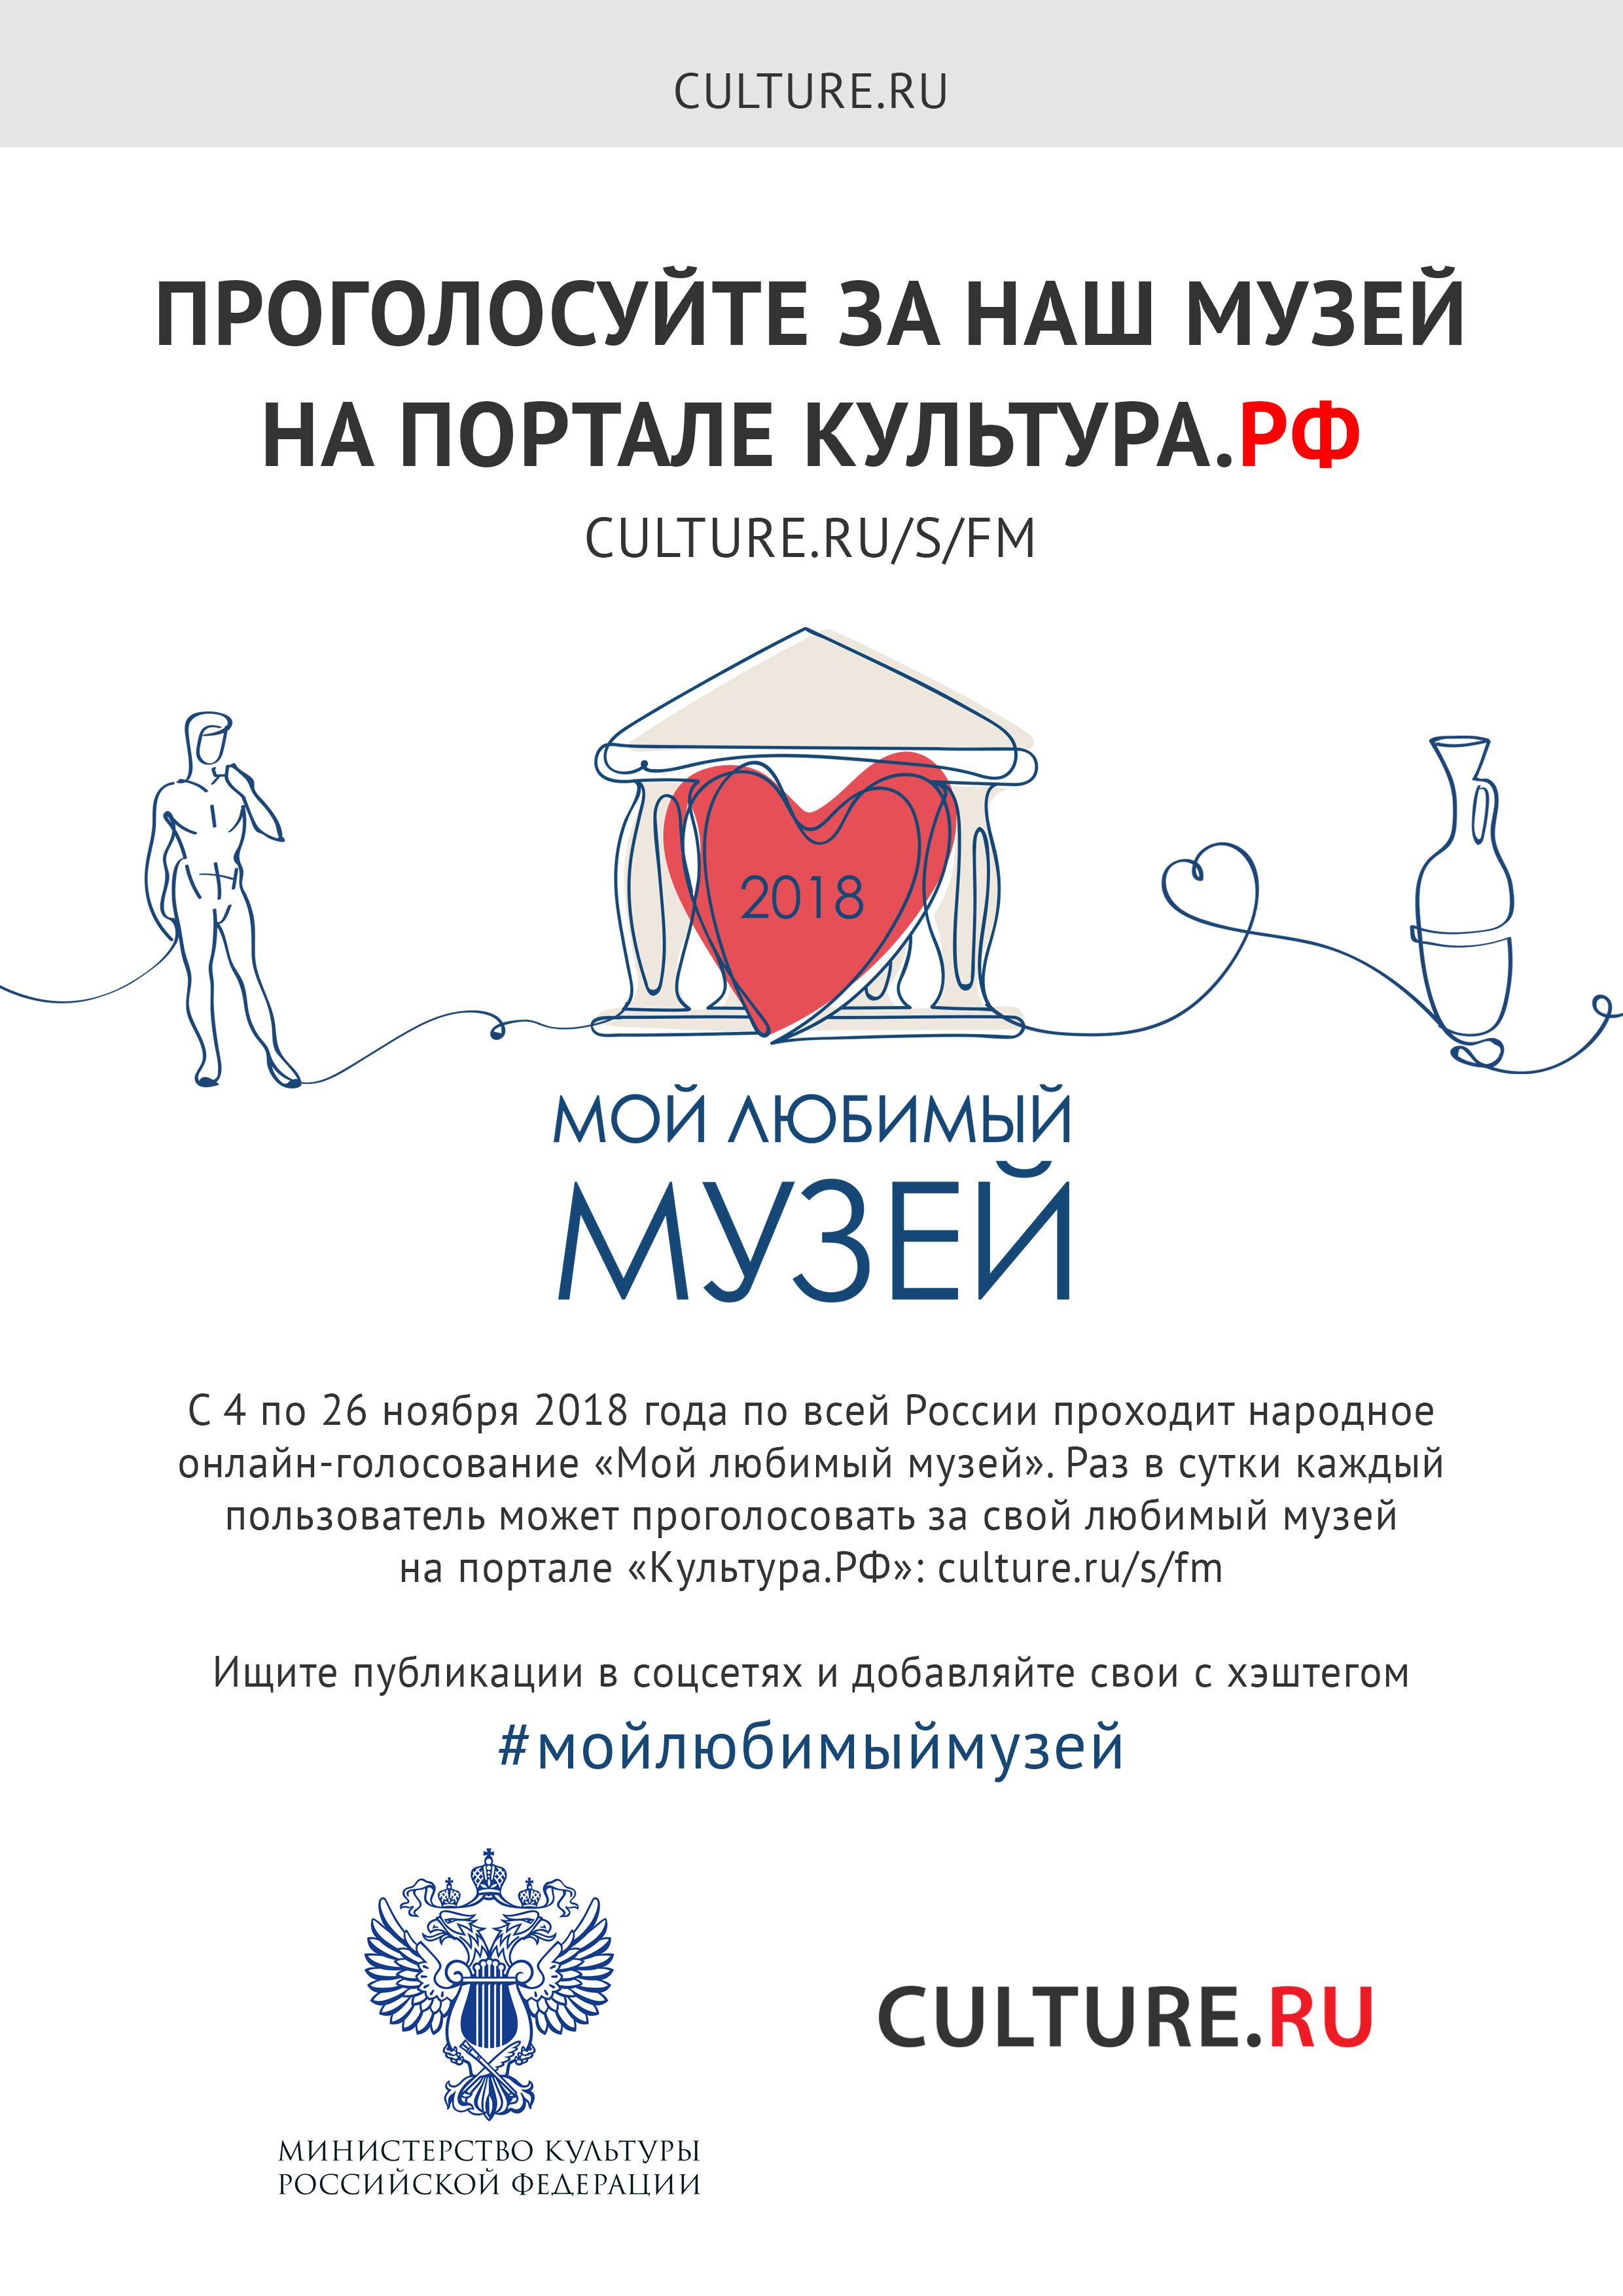 Всероссийское народное онлайн-голосование «Мой любимый музей»